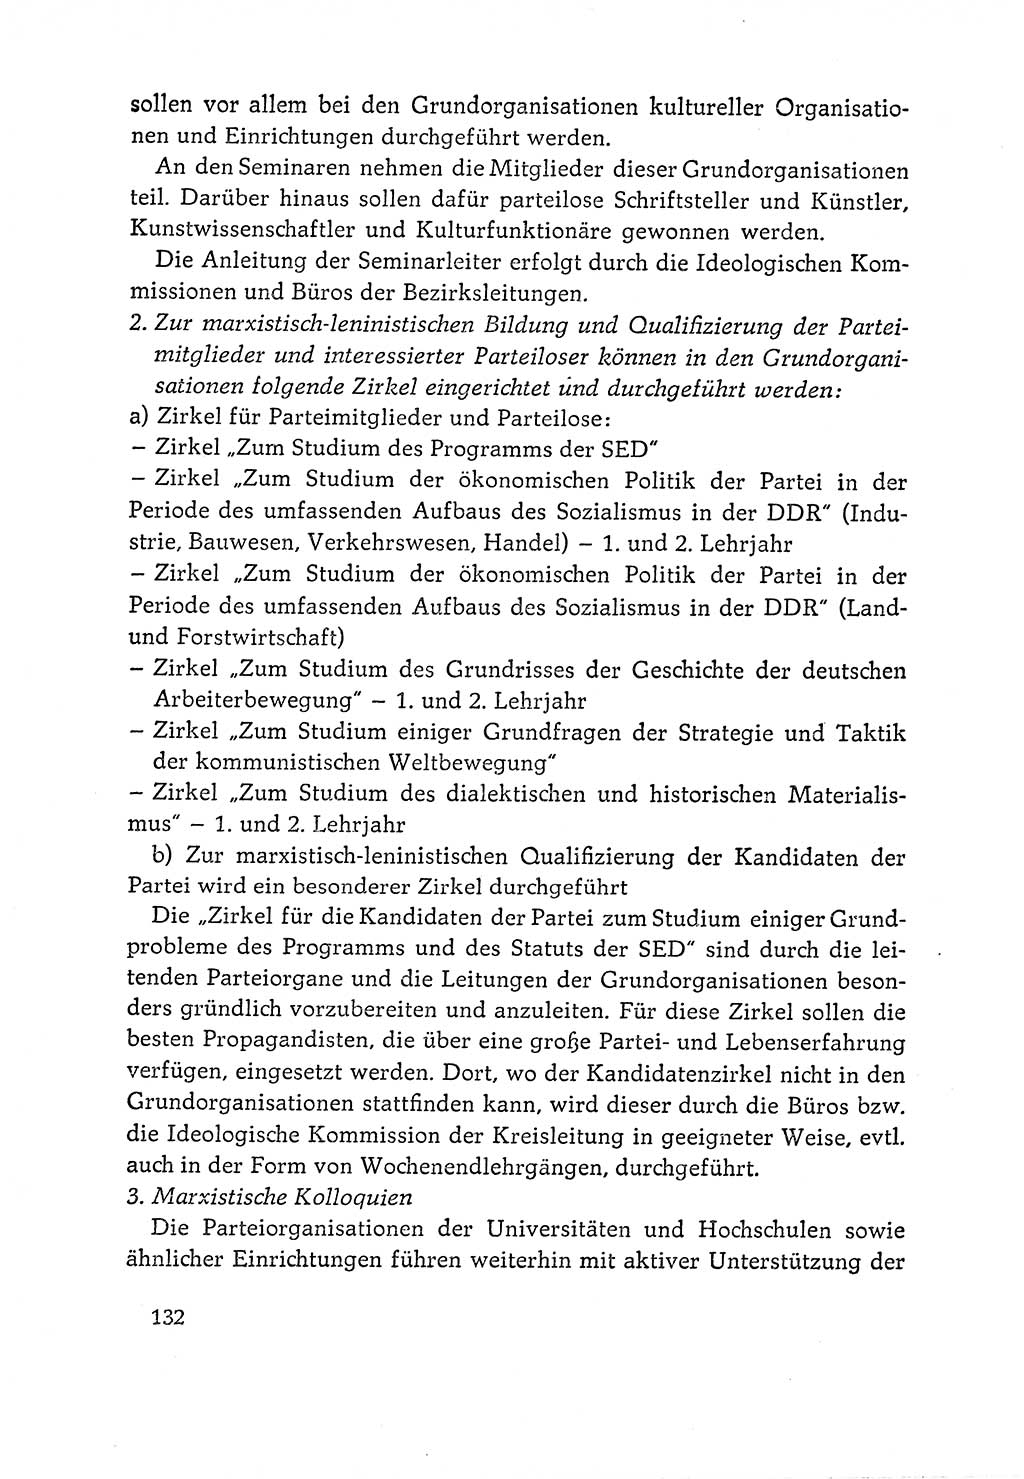 Dokumente der Sozialistischen Einheitspartei Deutschlands (SED) [Deutsche Demokratische Republik (DDR)] 1964-1965, Seite 132 (Dok. SED DDR 1964-1965, S. 132)